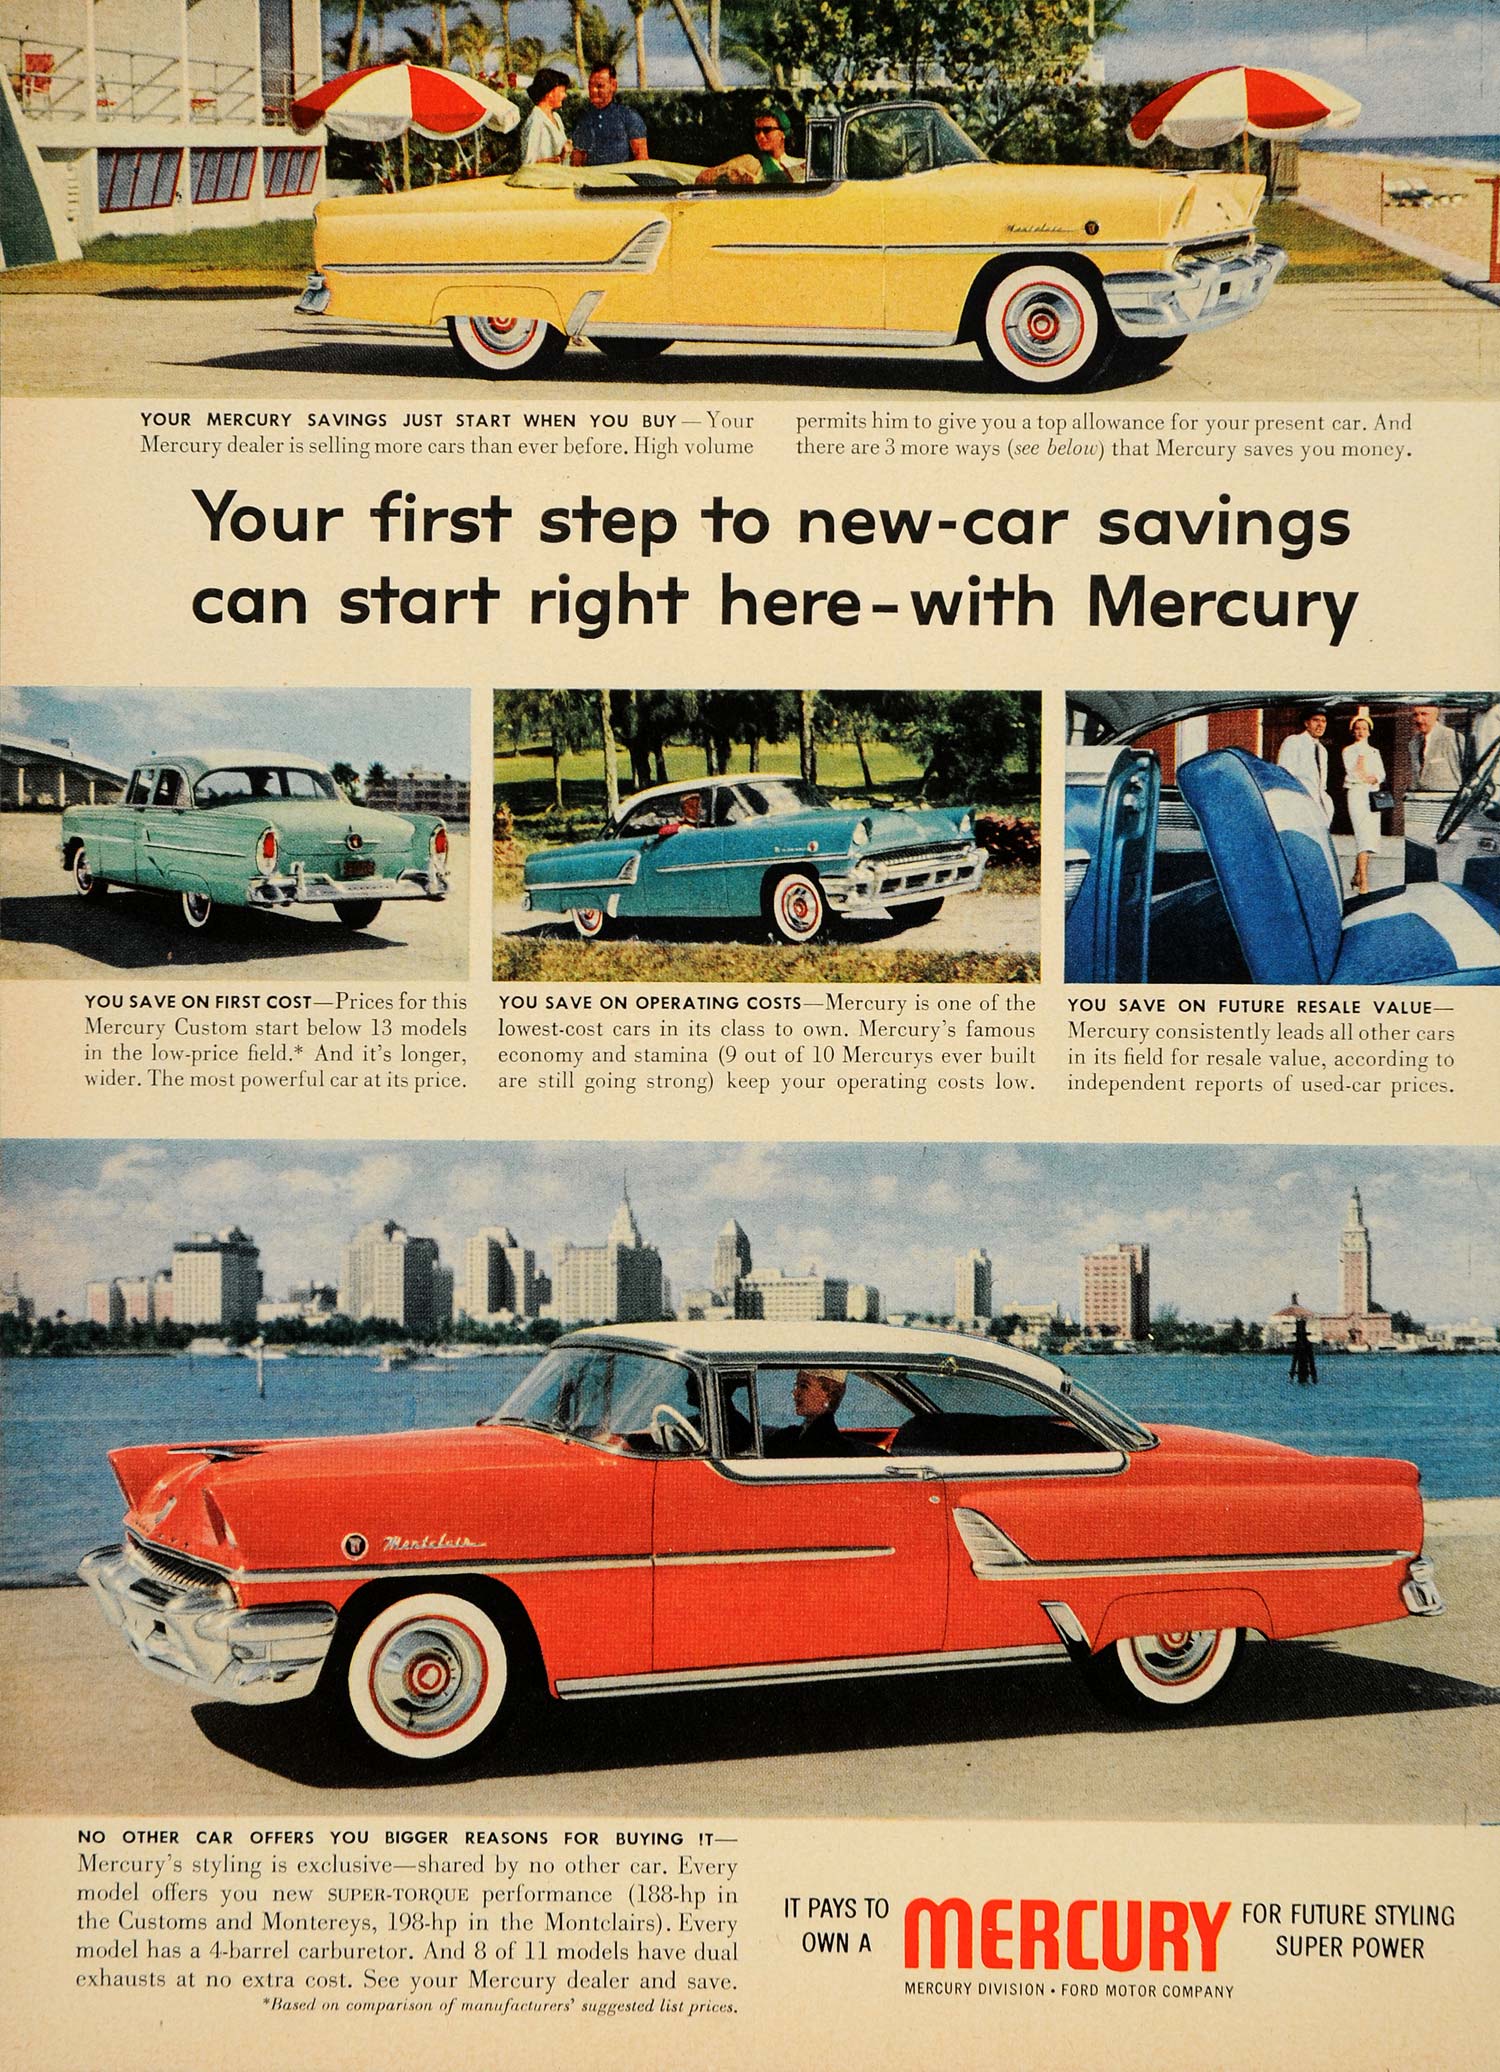 1955 Ad Beach Ford Mercury Monterey 4 Barrel Carburetor - ORIGINAL TM3